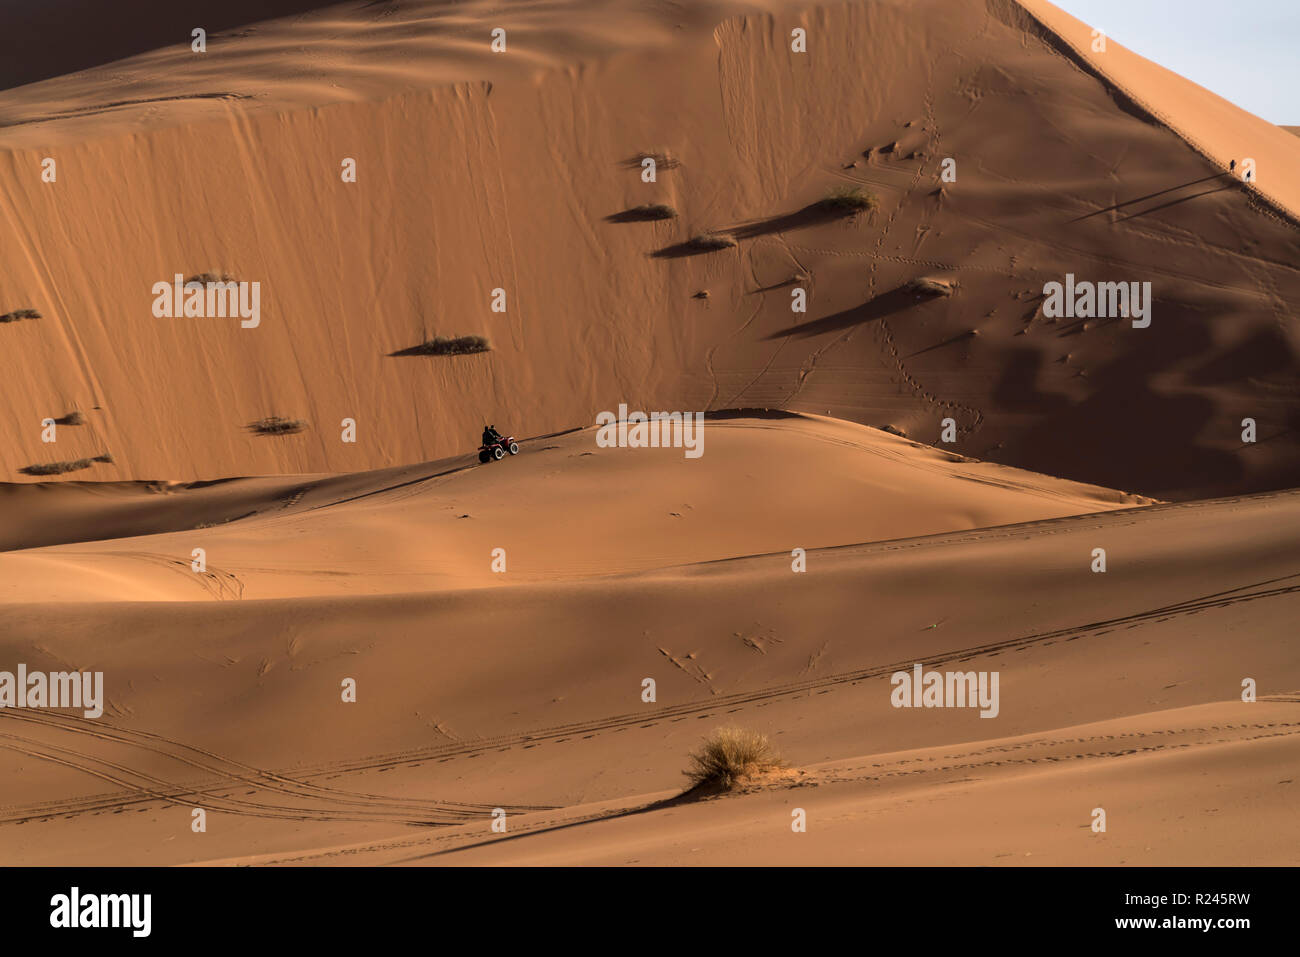 En Quad Sahara Ancien Wüste bei der Merzouga, Maroc | Véhicule tout-terrain dans le désert du Sahara, près de Merzouga, Royaume du Maroc, l'Afrique Banque D'Images